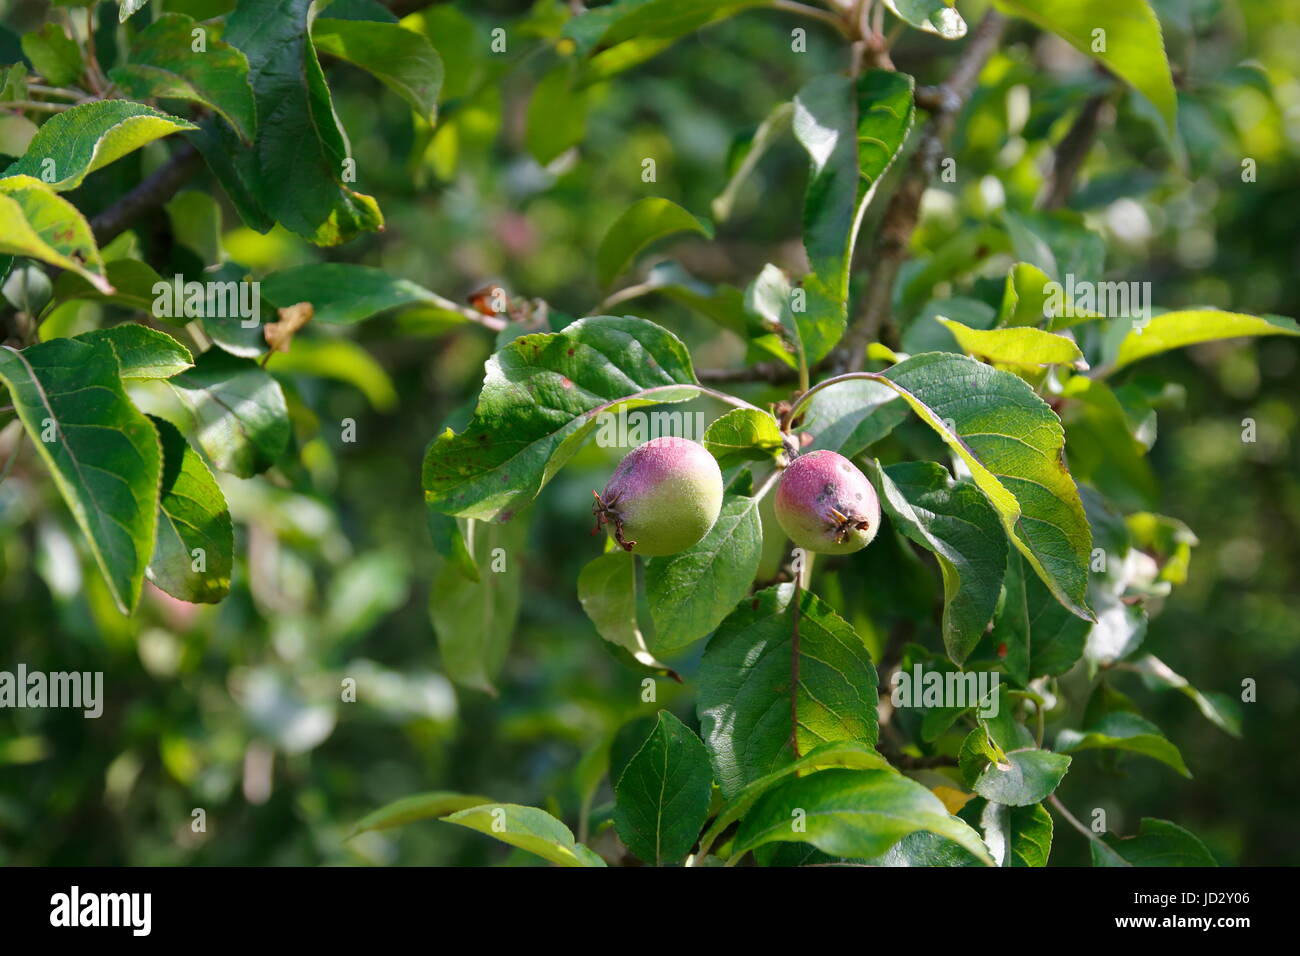 Apfel Frucht im Wachstum, direkt nach der Blüte am Baum Stock Photo